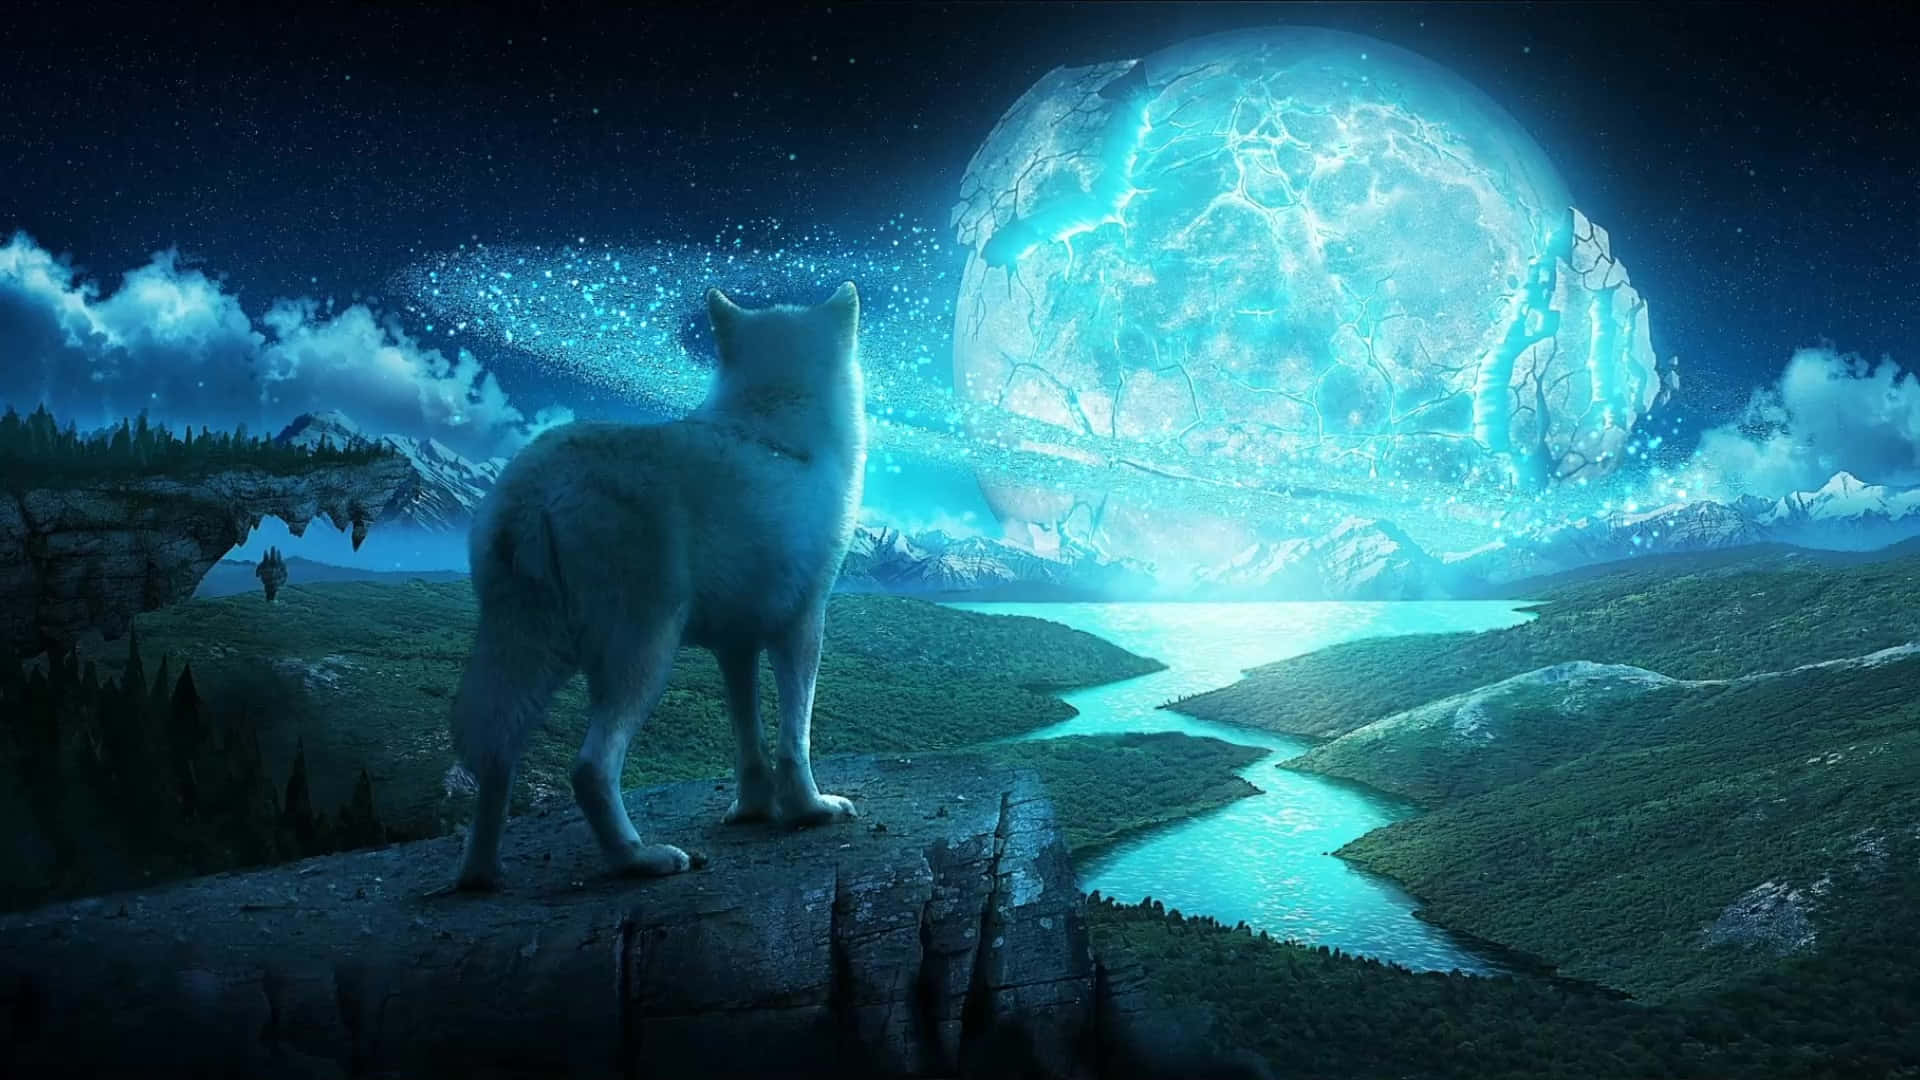 Einfaszinierender Wolfmond Am Nachthimmel Wallpaper